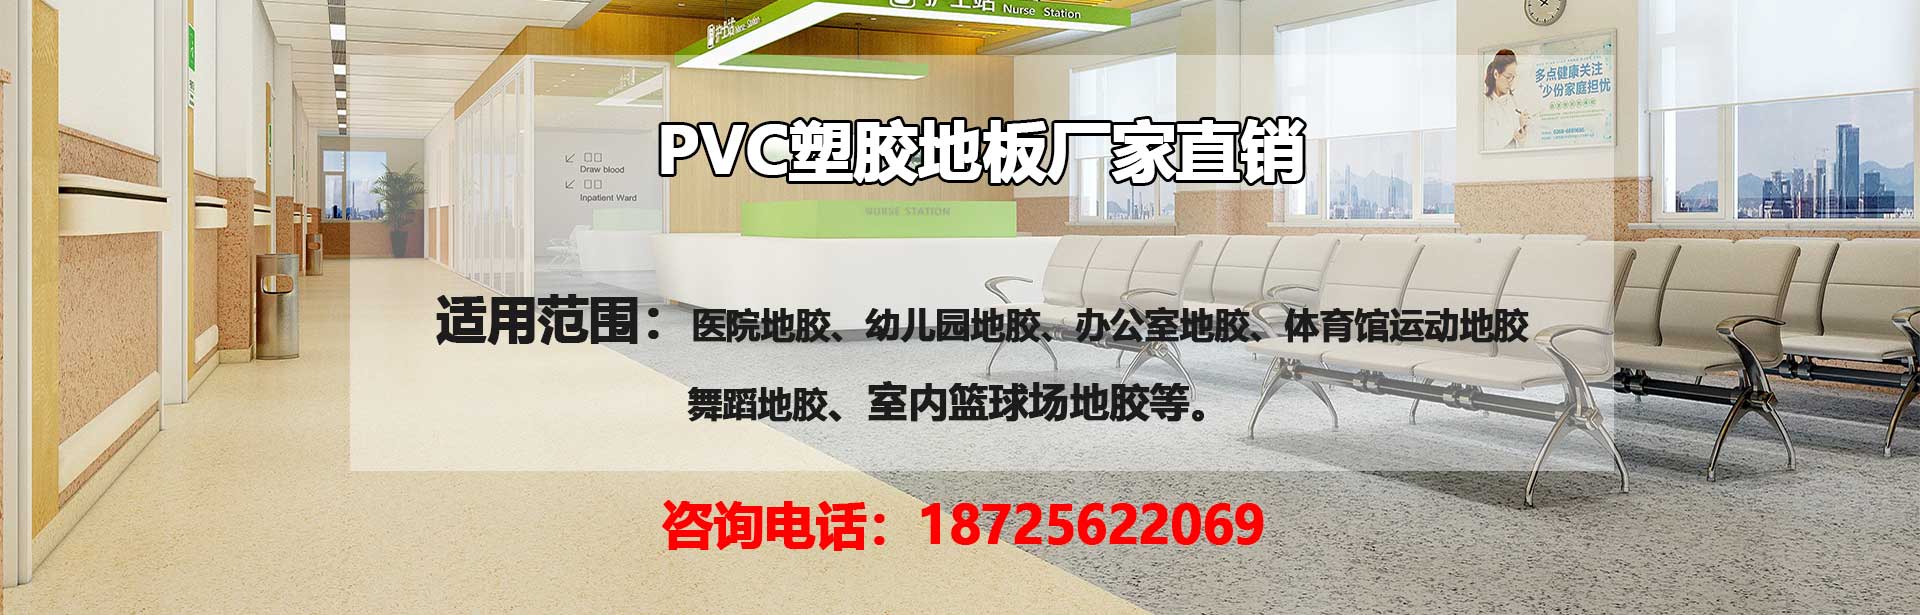 艾西克PVC塑胶地板厂家艾西克PVC塑胶地板